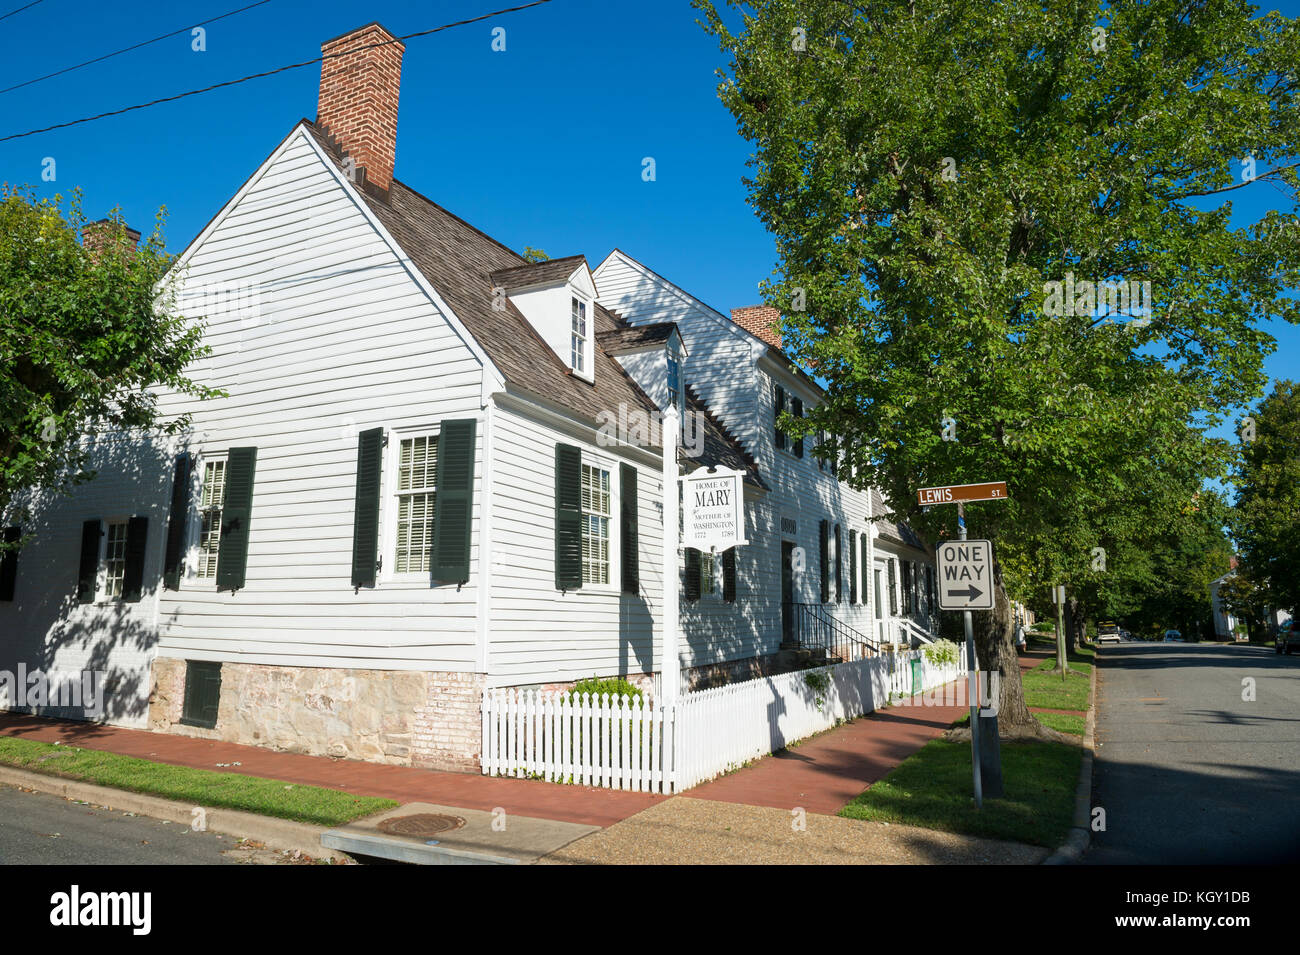 Fredericksburg, Stati Uniti d'America - 09 settembre 2017: storico stile coloniale casa di Maria di Washington (madre di George Washington) nella zona del centro storico. Foto Stock